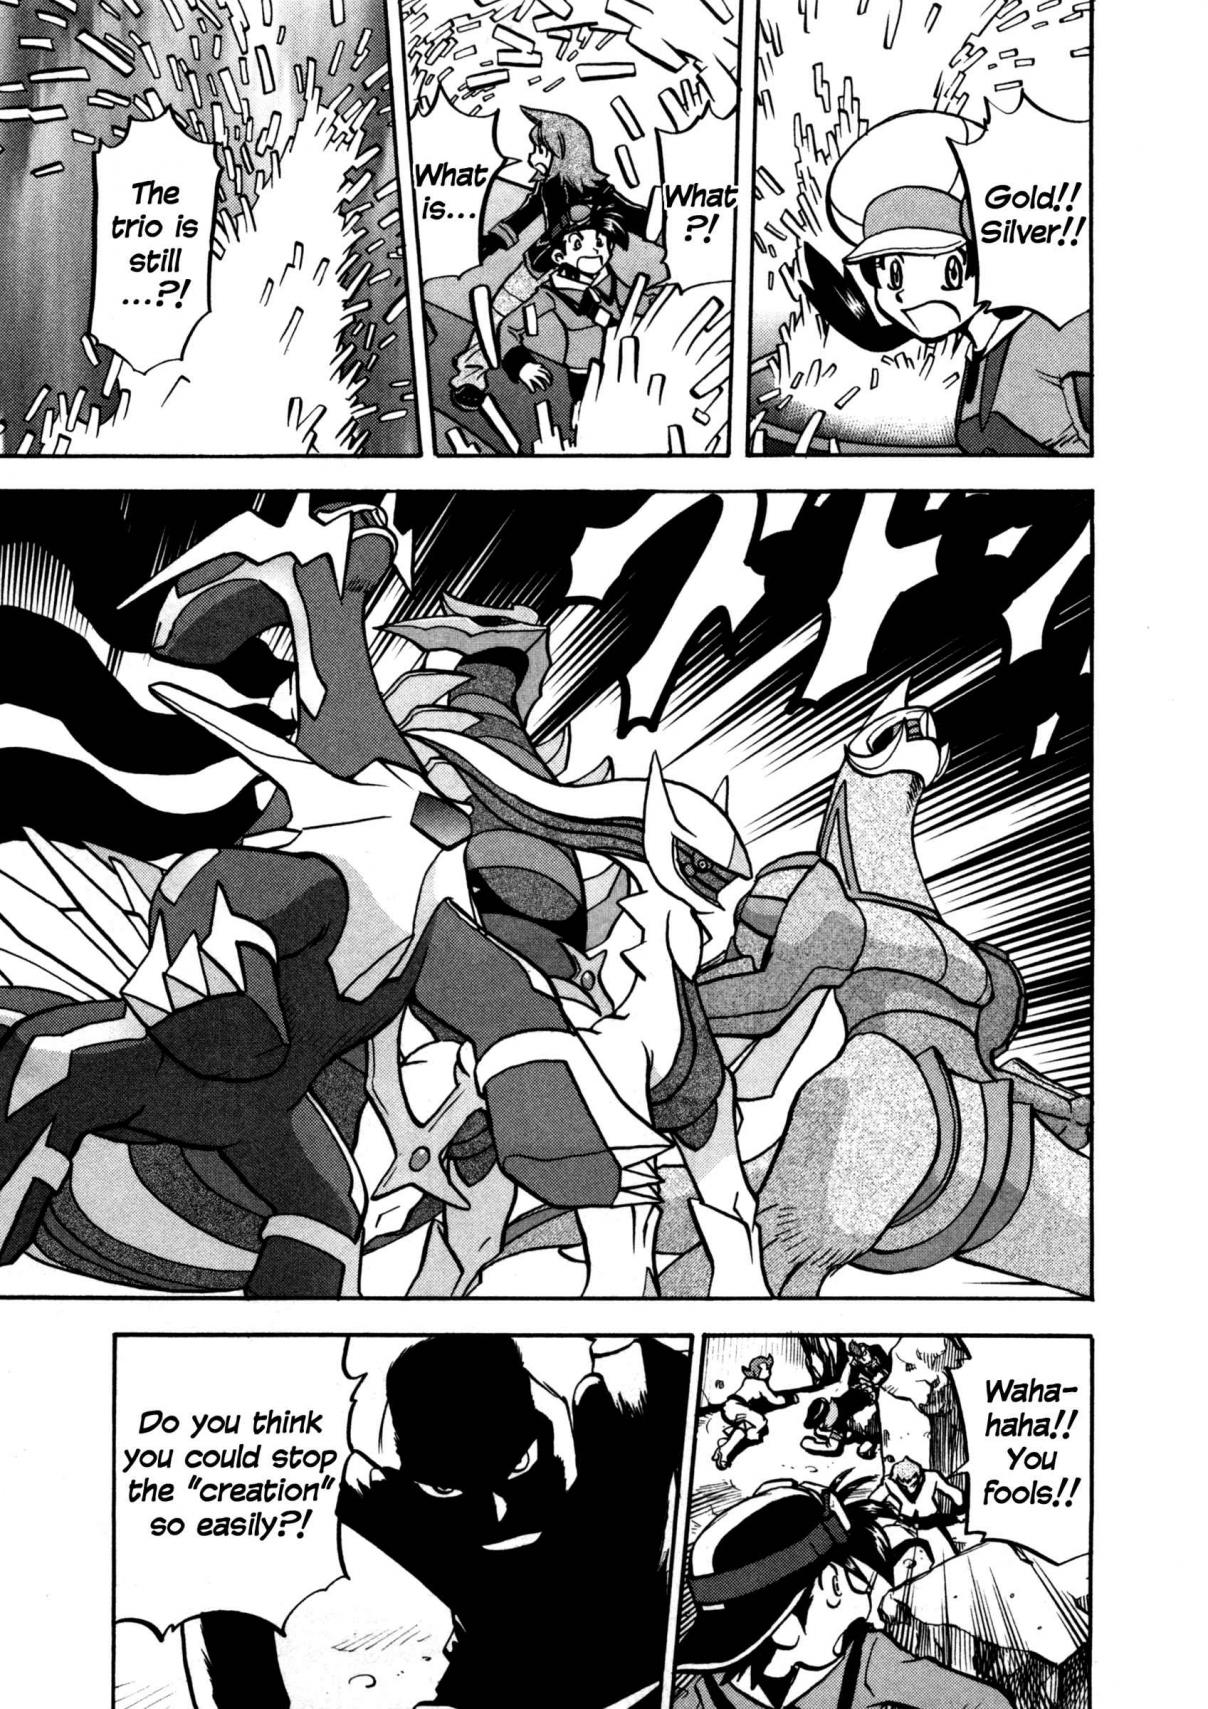 Pokémon Special Vol. 42 Ch. 456 VS Arceus V